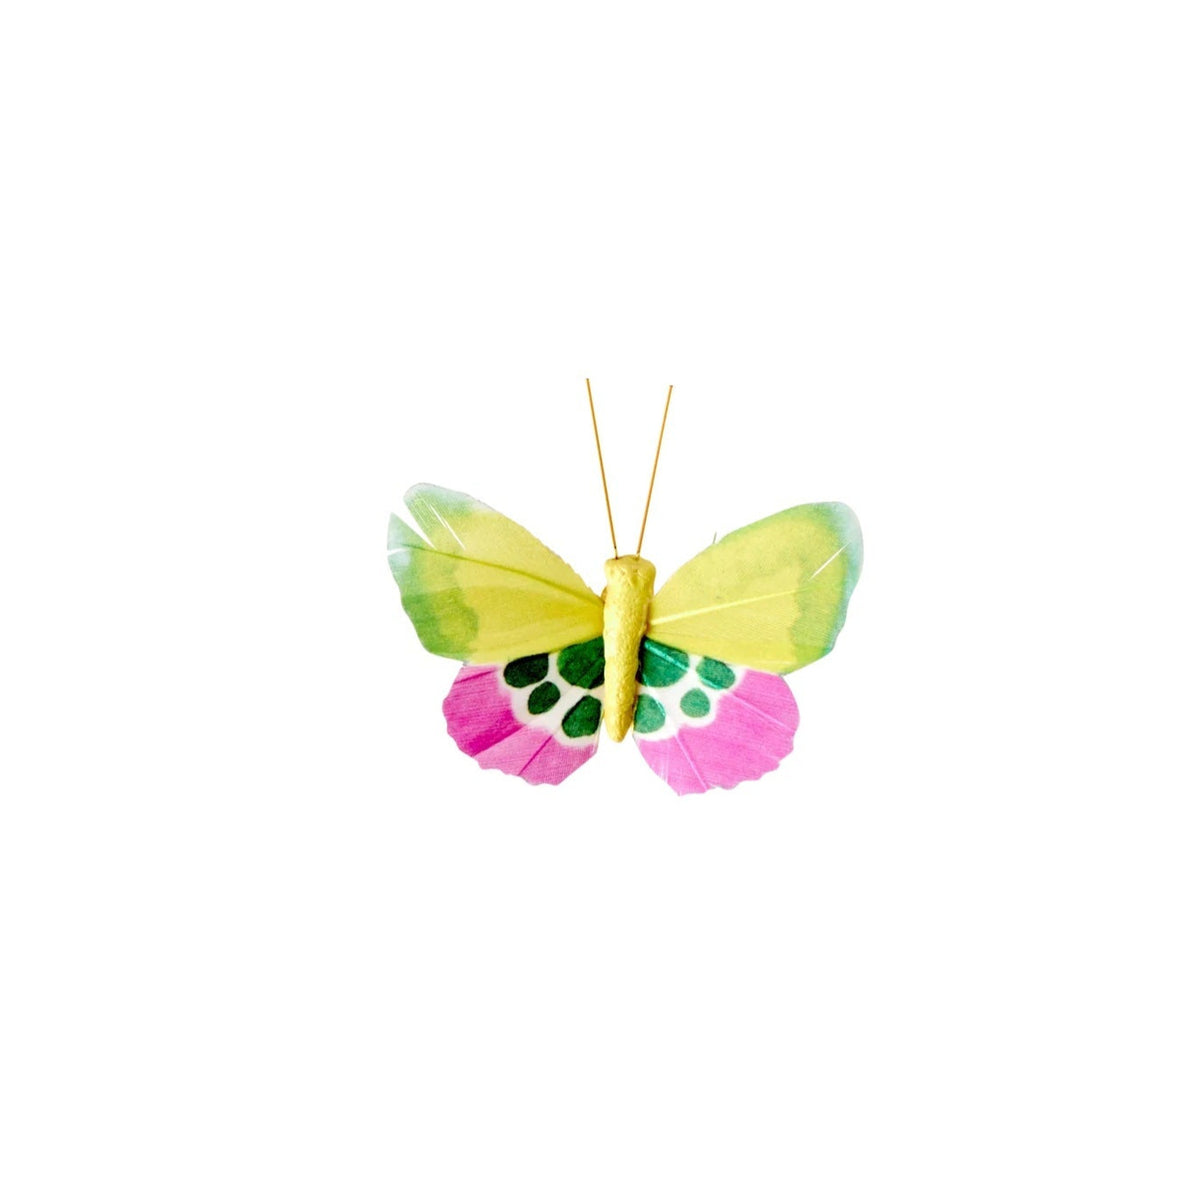 Deko-sommerfugl gul og pink med prikker · Sommerfugl på klip fra Rice · Niedziella & Friends (8354743615833) (8354750824793) (8354754953561)